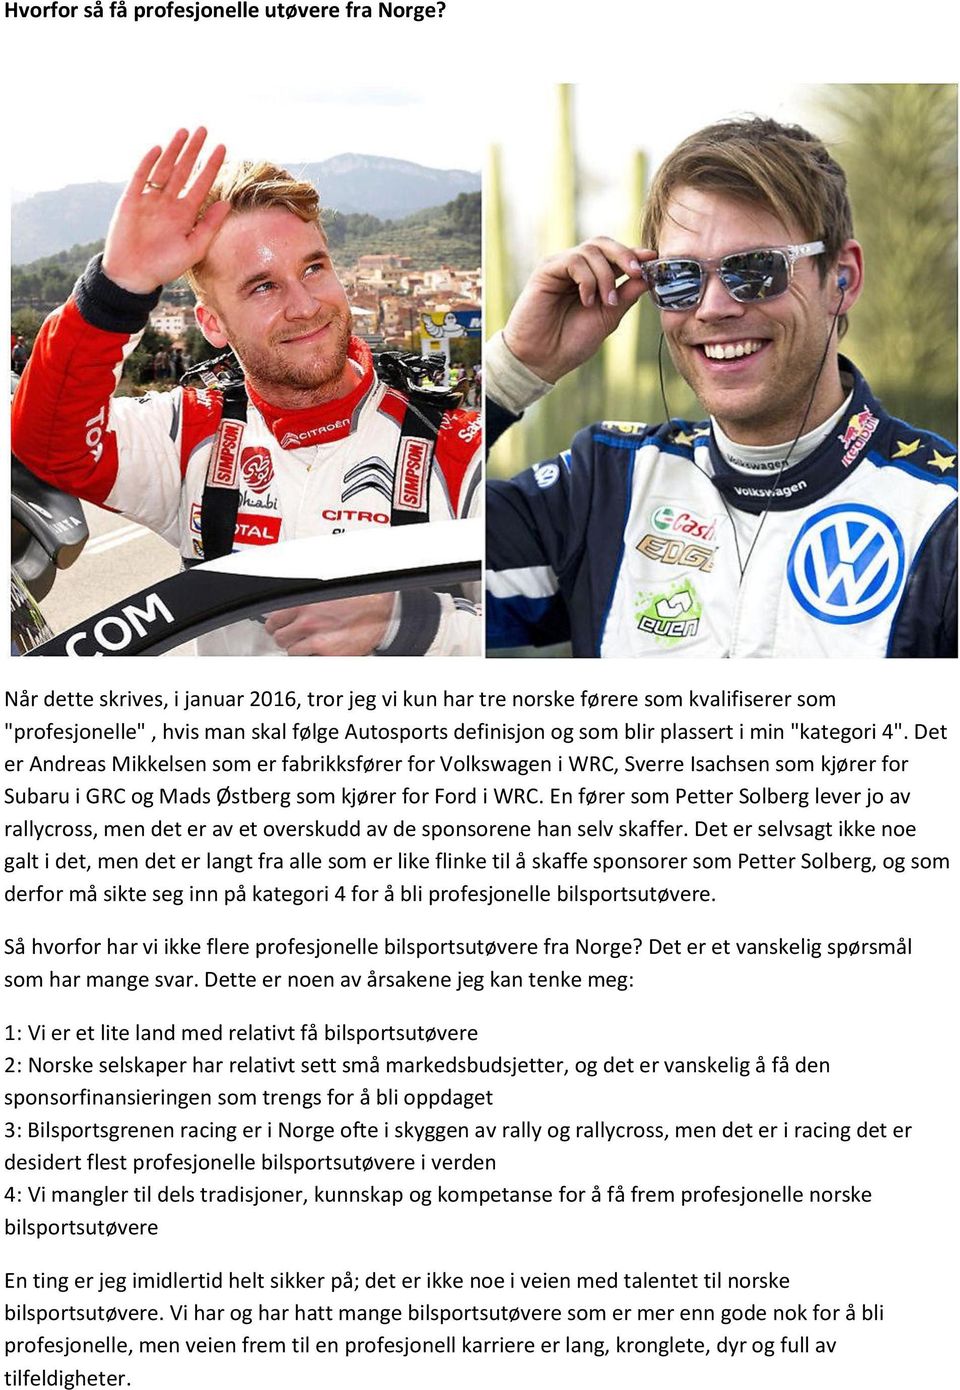 Det er Andreas Mikkelsen som er fabrikksfører for Volkswagen i WRC, Sverre Isachsen som kjører for Subaru i GRC og Mads Østberg som kjører for Ford i WRC.